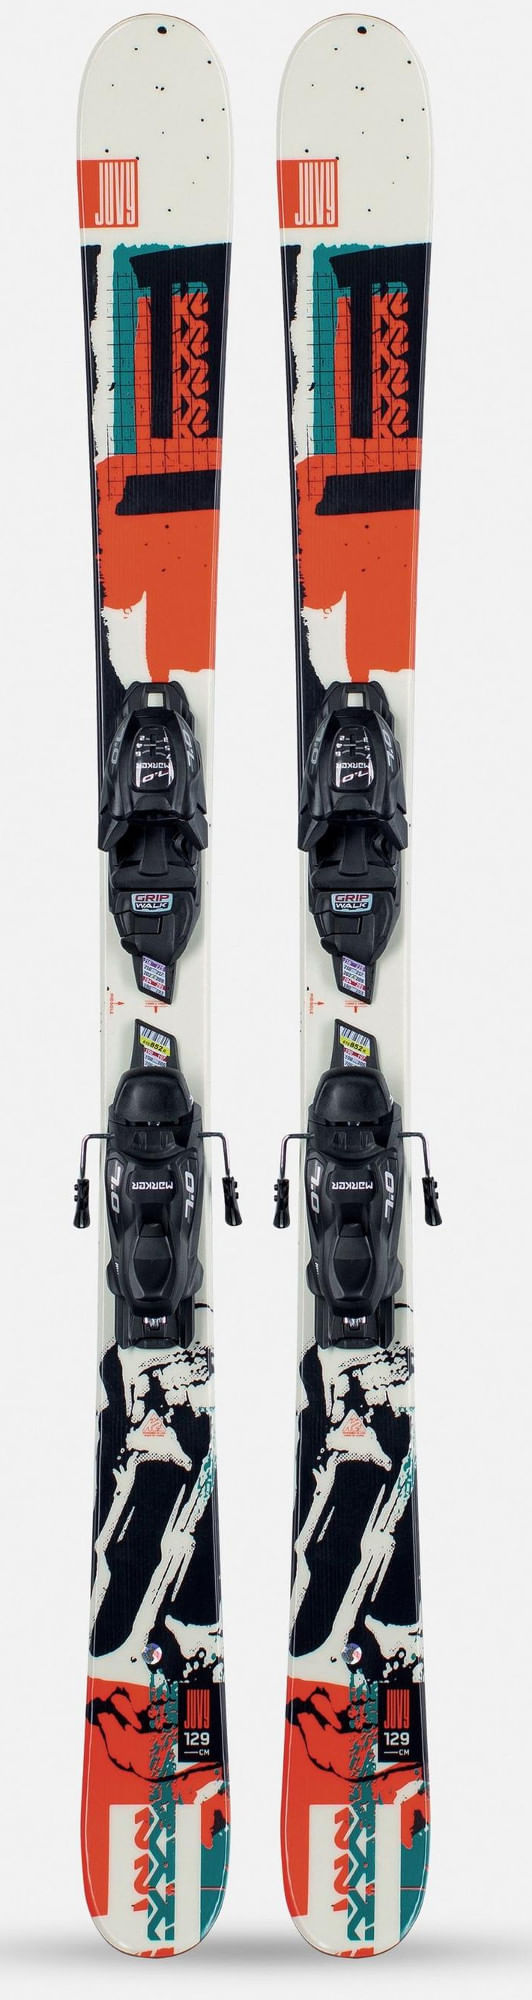 K2-Juvy-Kids-Skis-with-FDT-4.5-Bindings-2021